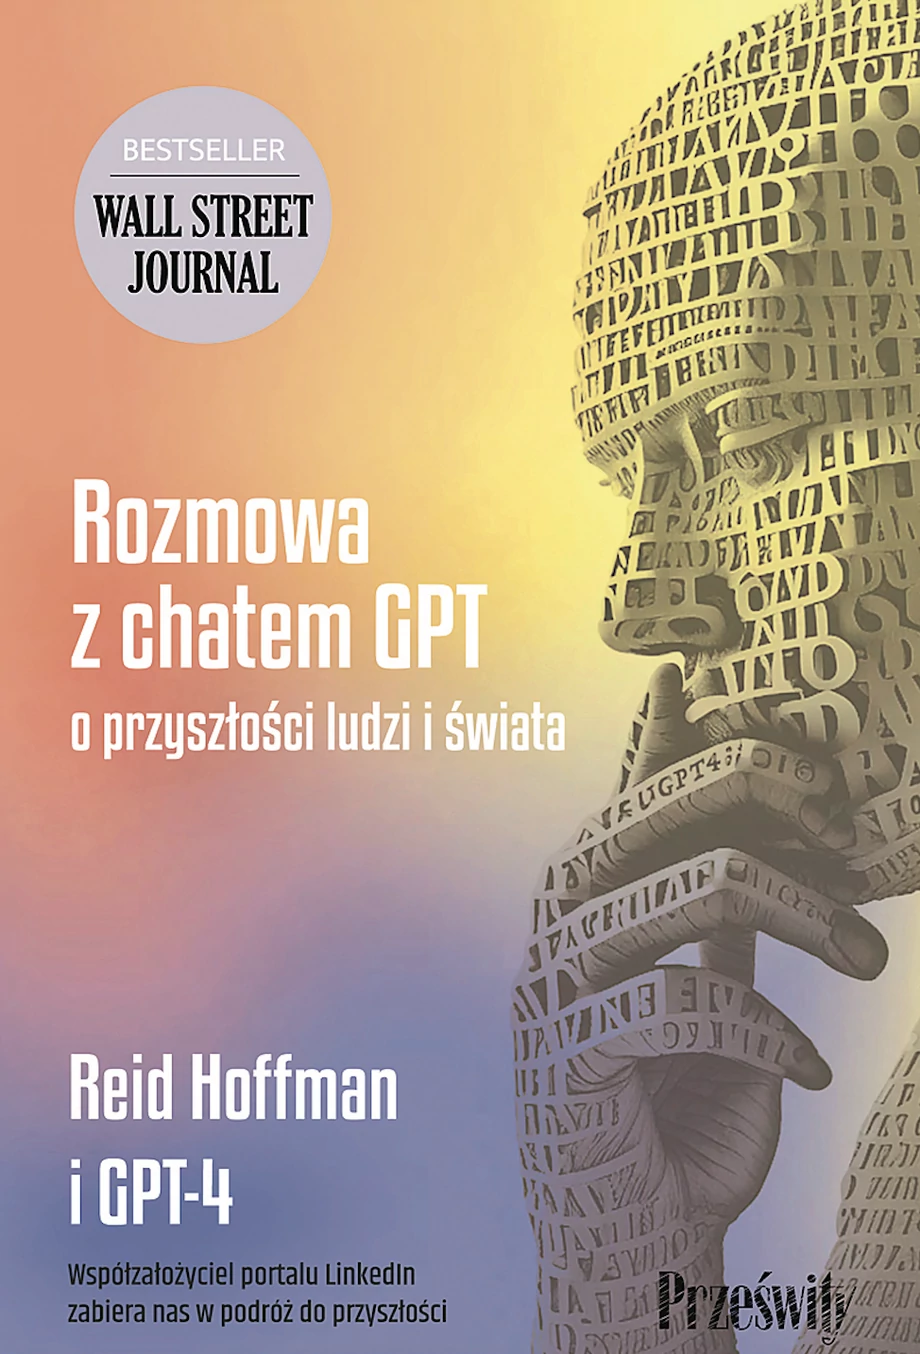 Reid Hoffman i GPT-4, Rozmowa z chatem GPT o przyszłości ludzi i świata, Wydawnictwo prześwity.pl